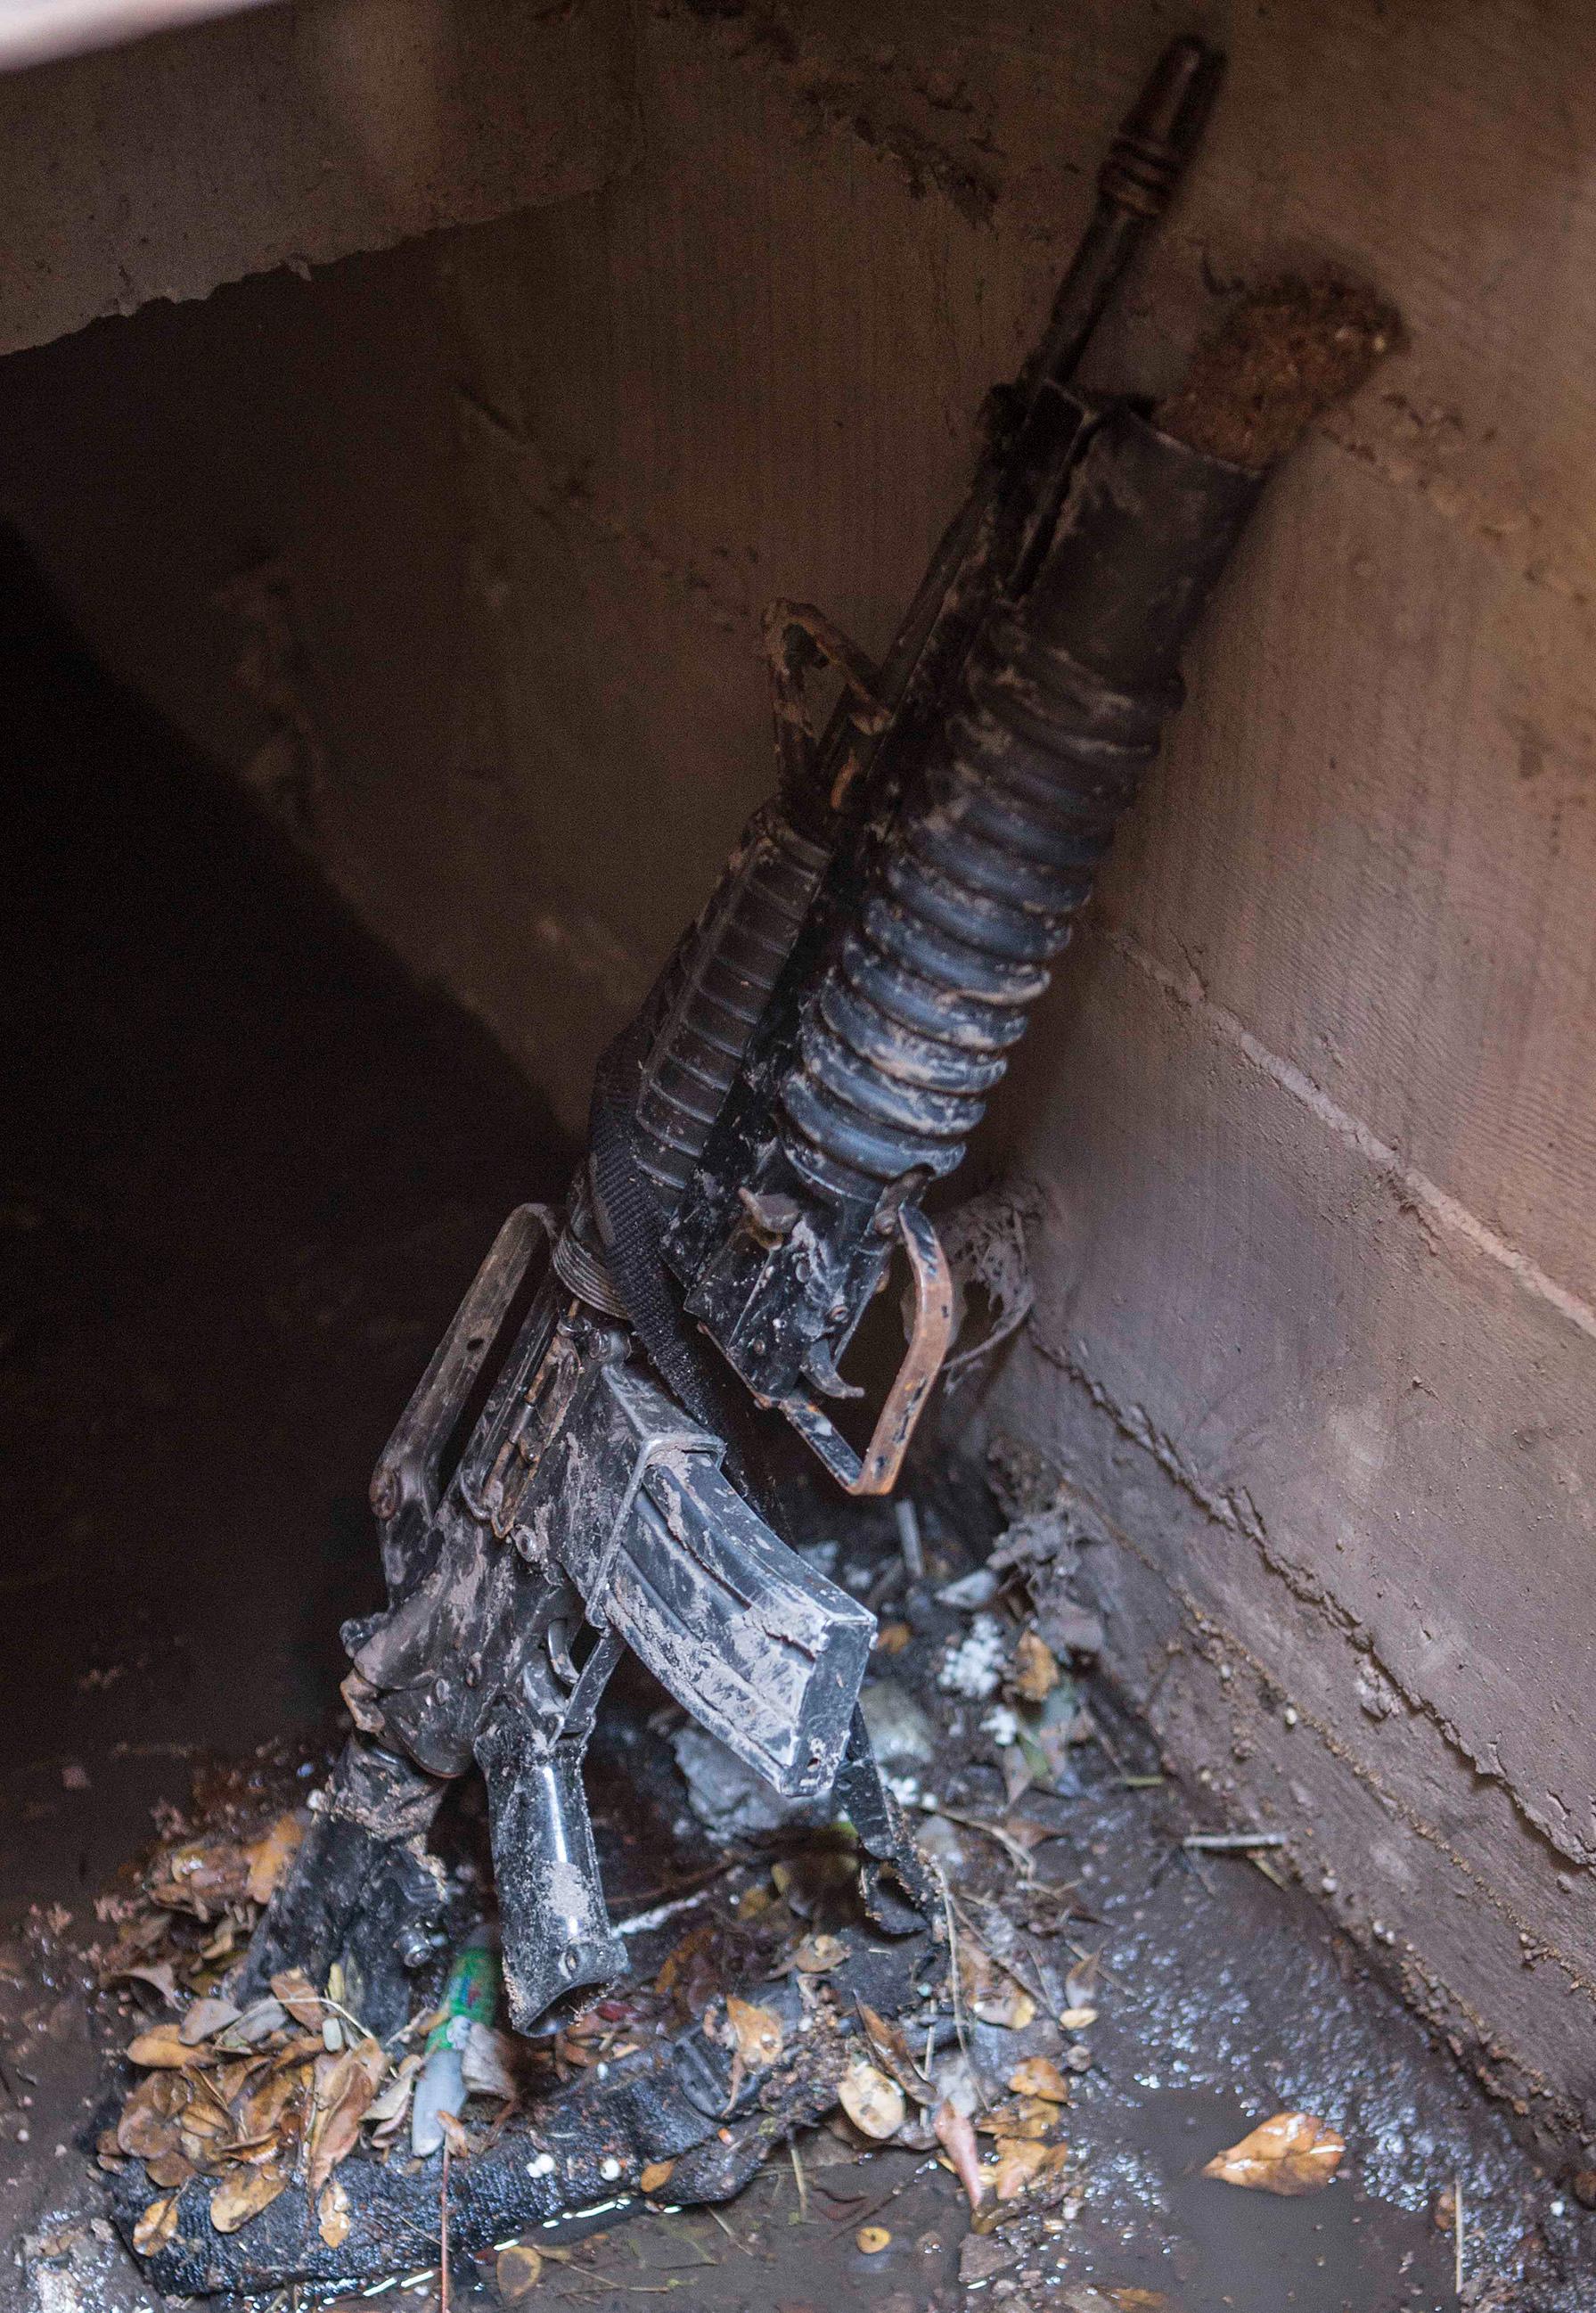 Vapen hittat i en avloppstunnel som El Chapo flydde genom.